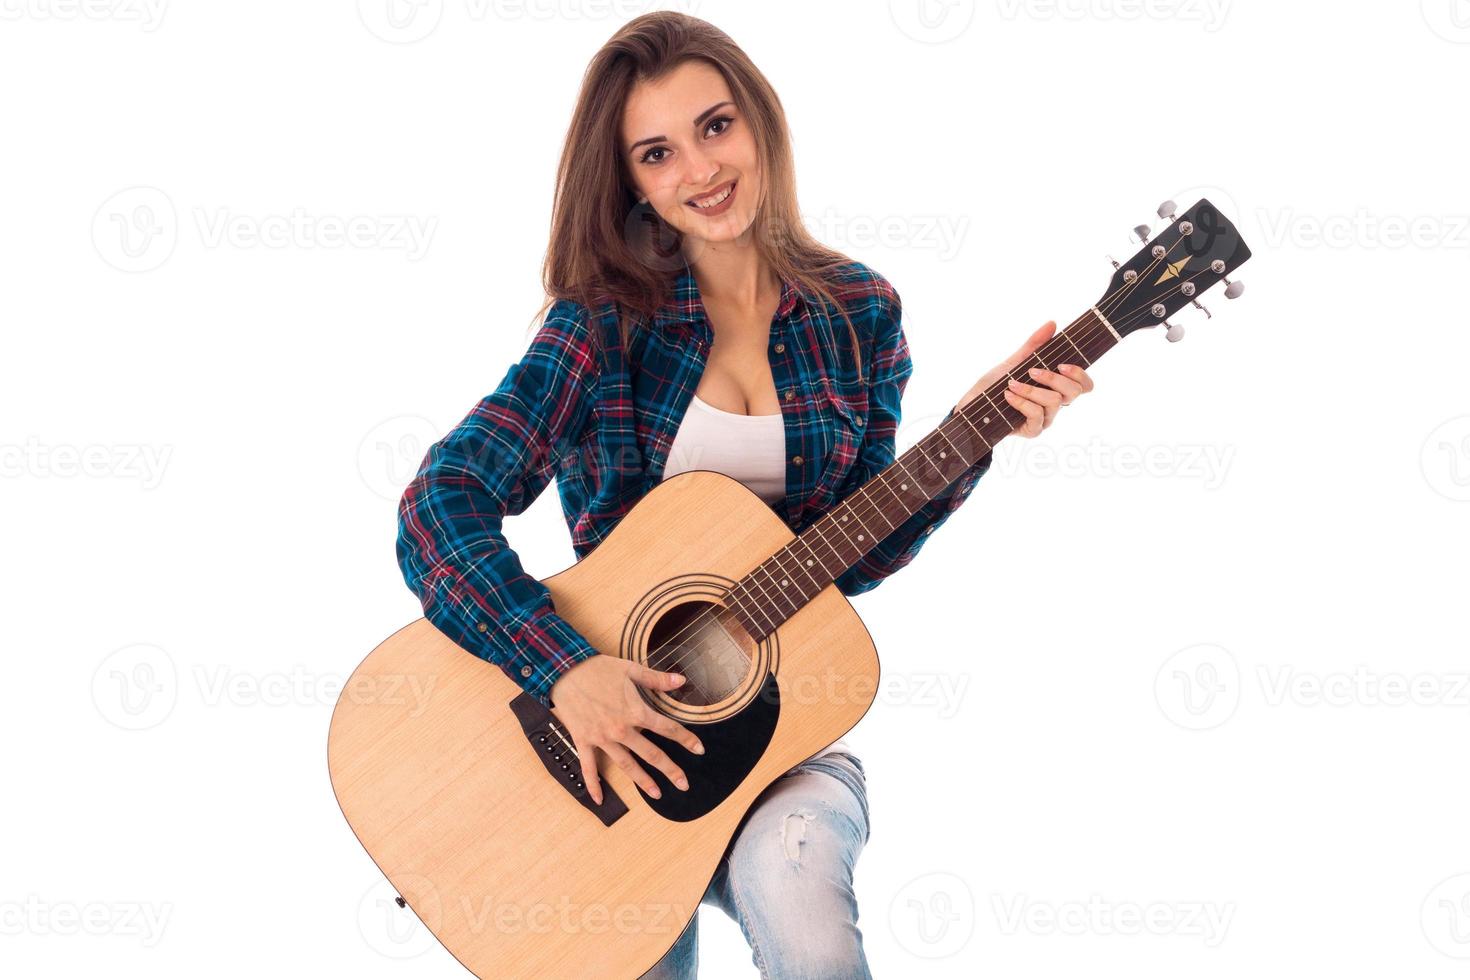 chica joven con guitarra en las manos foto